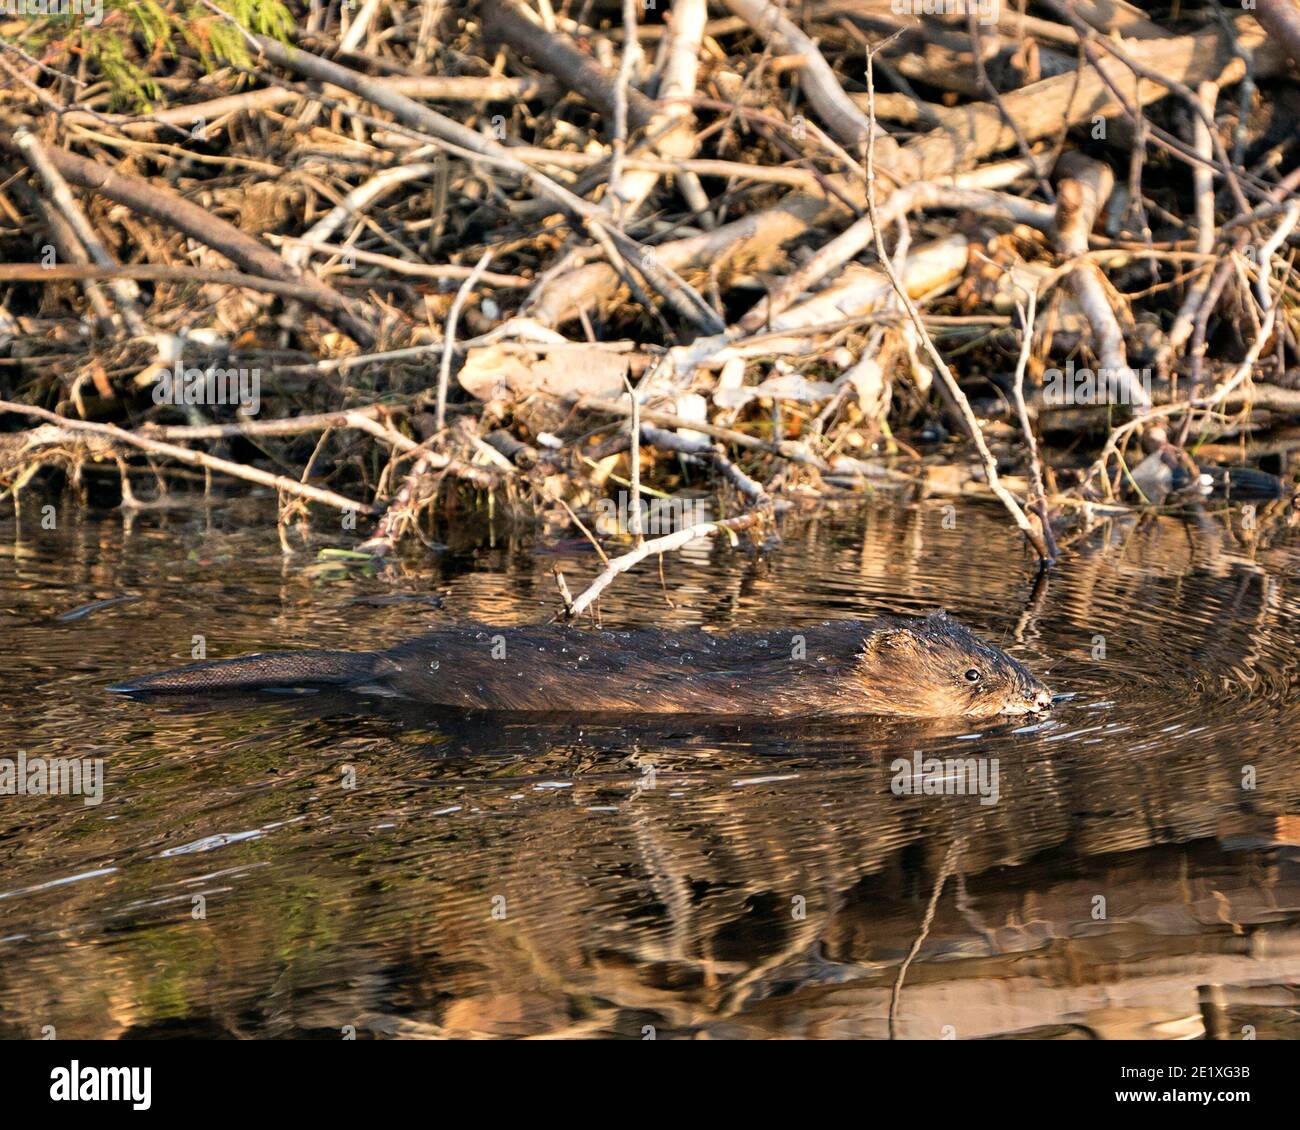 Muskrat in acqua dal suo burrow den che mostra la sua pelliccia marrone e la coda nel suo ambiente e habitat. Immagine. Immagine. Verticale. Foto Stock